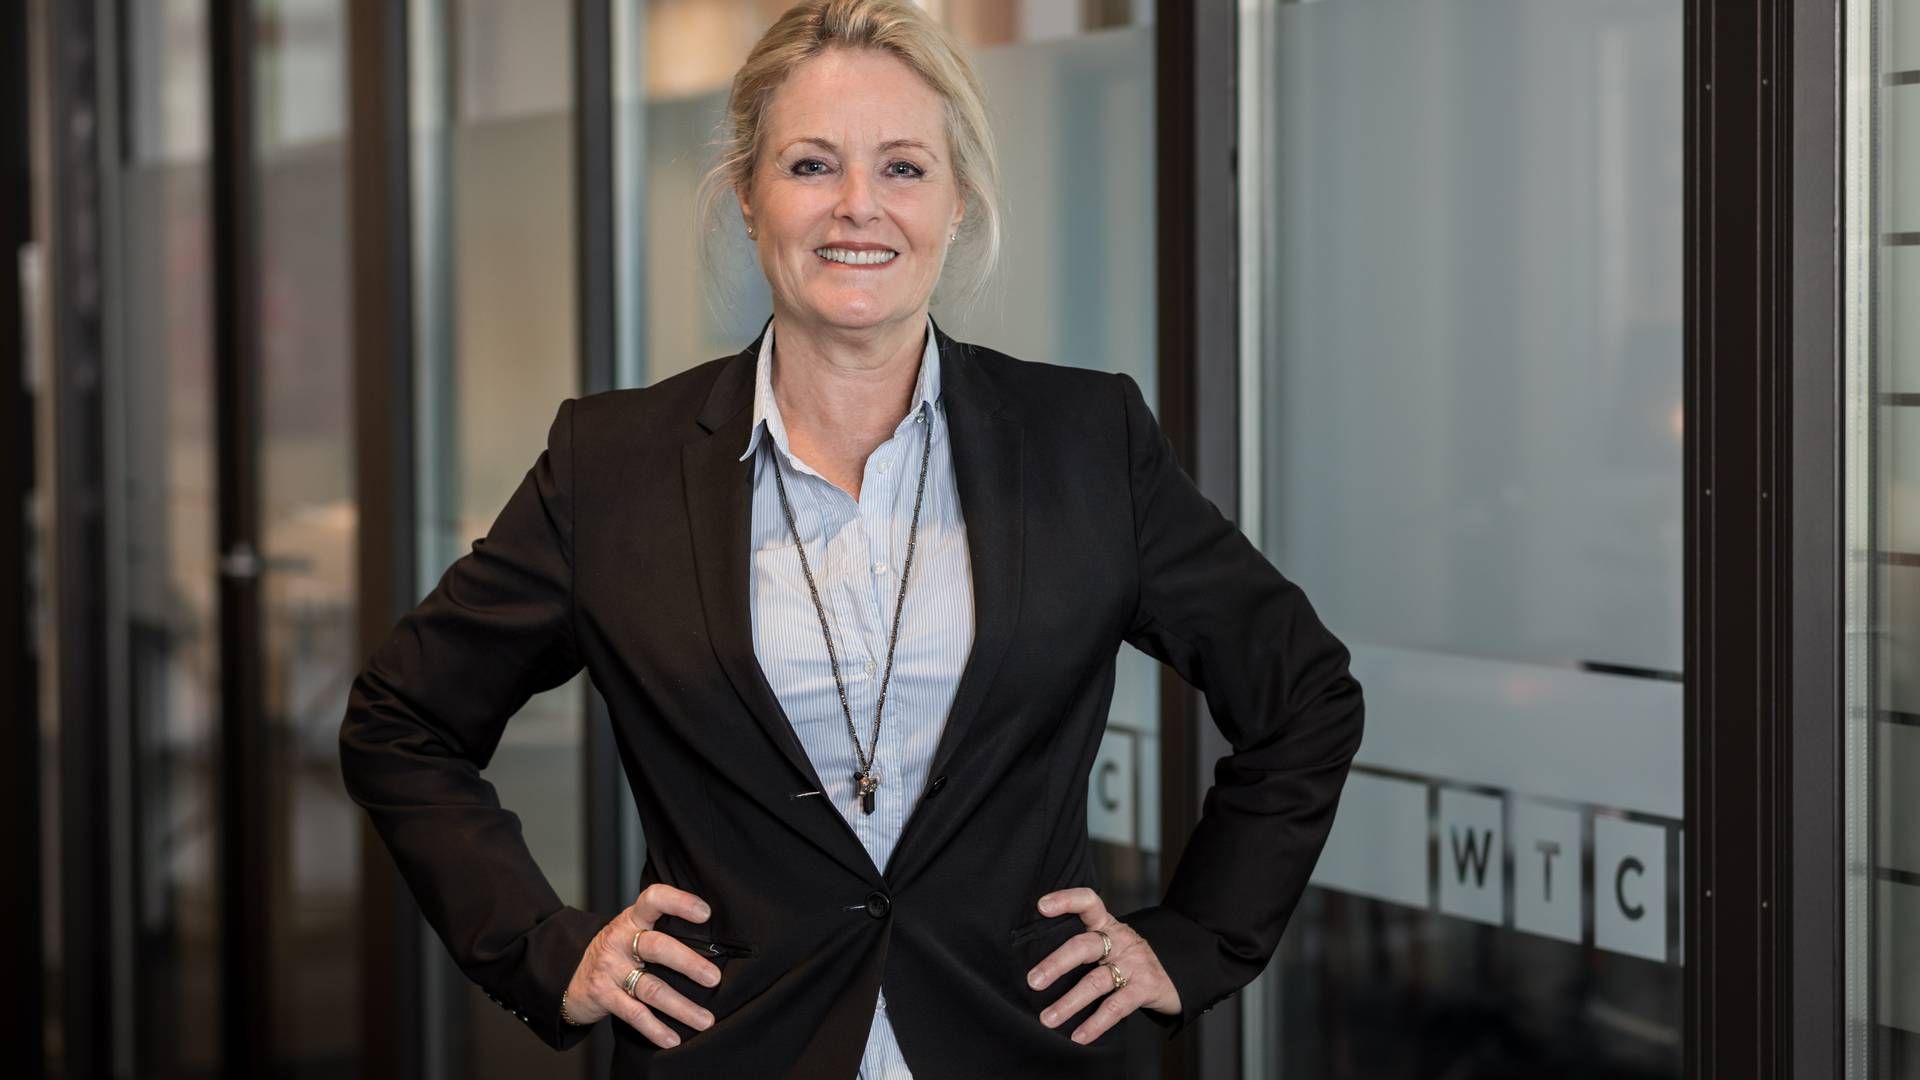 Helle Jørgsholm, advokat og partner i WTC Advokaterne, hvor hun blandt andet rådgiver i forbindelse med virksomhedsoverdragelser. | Foto: Privatfoto